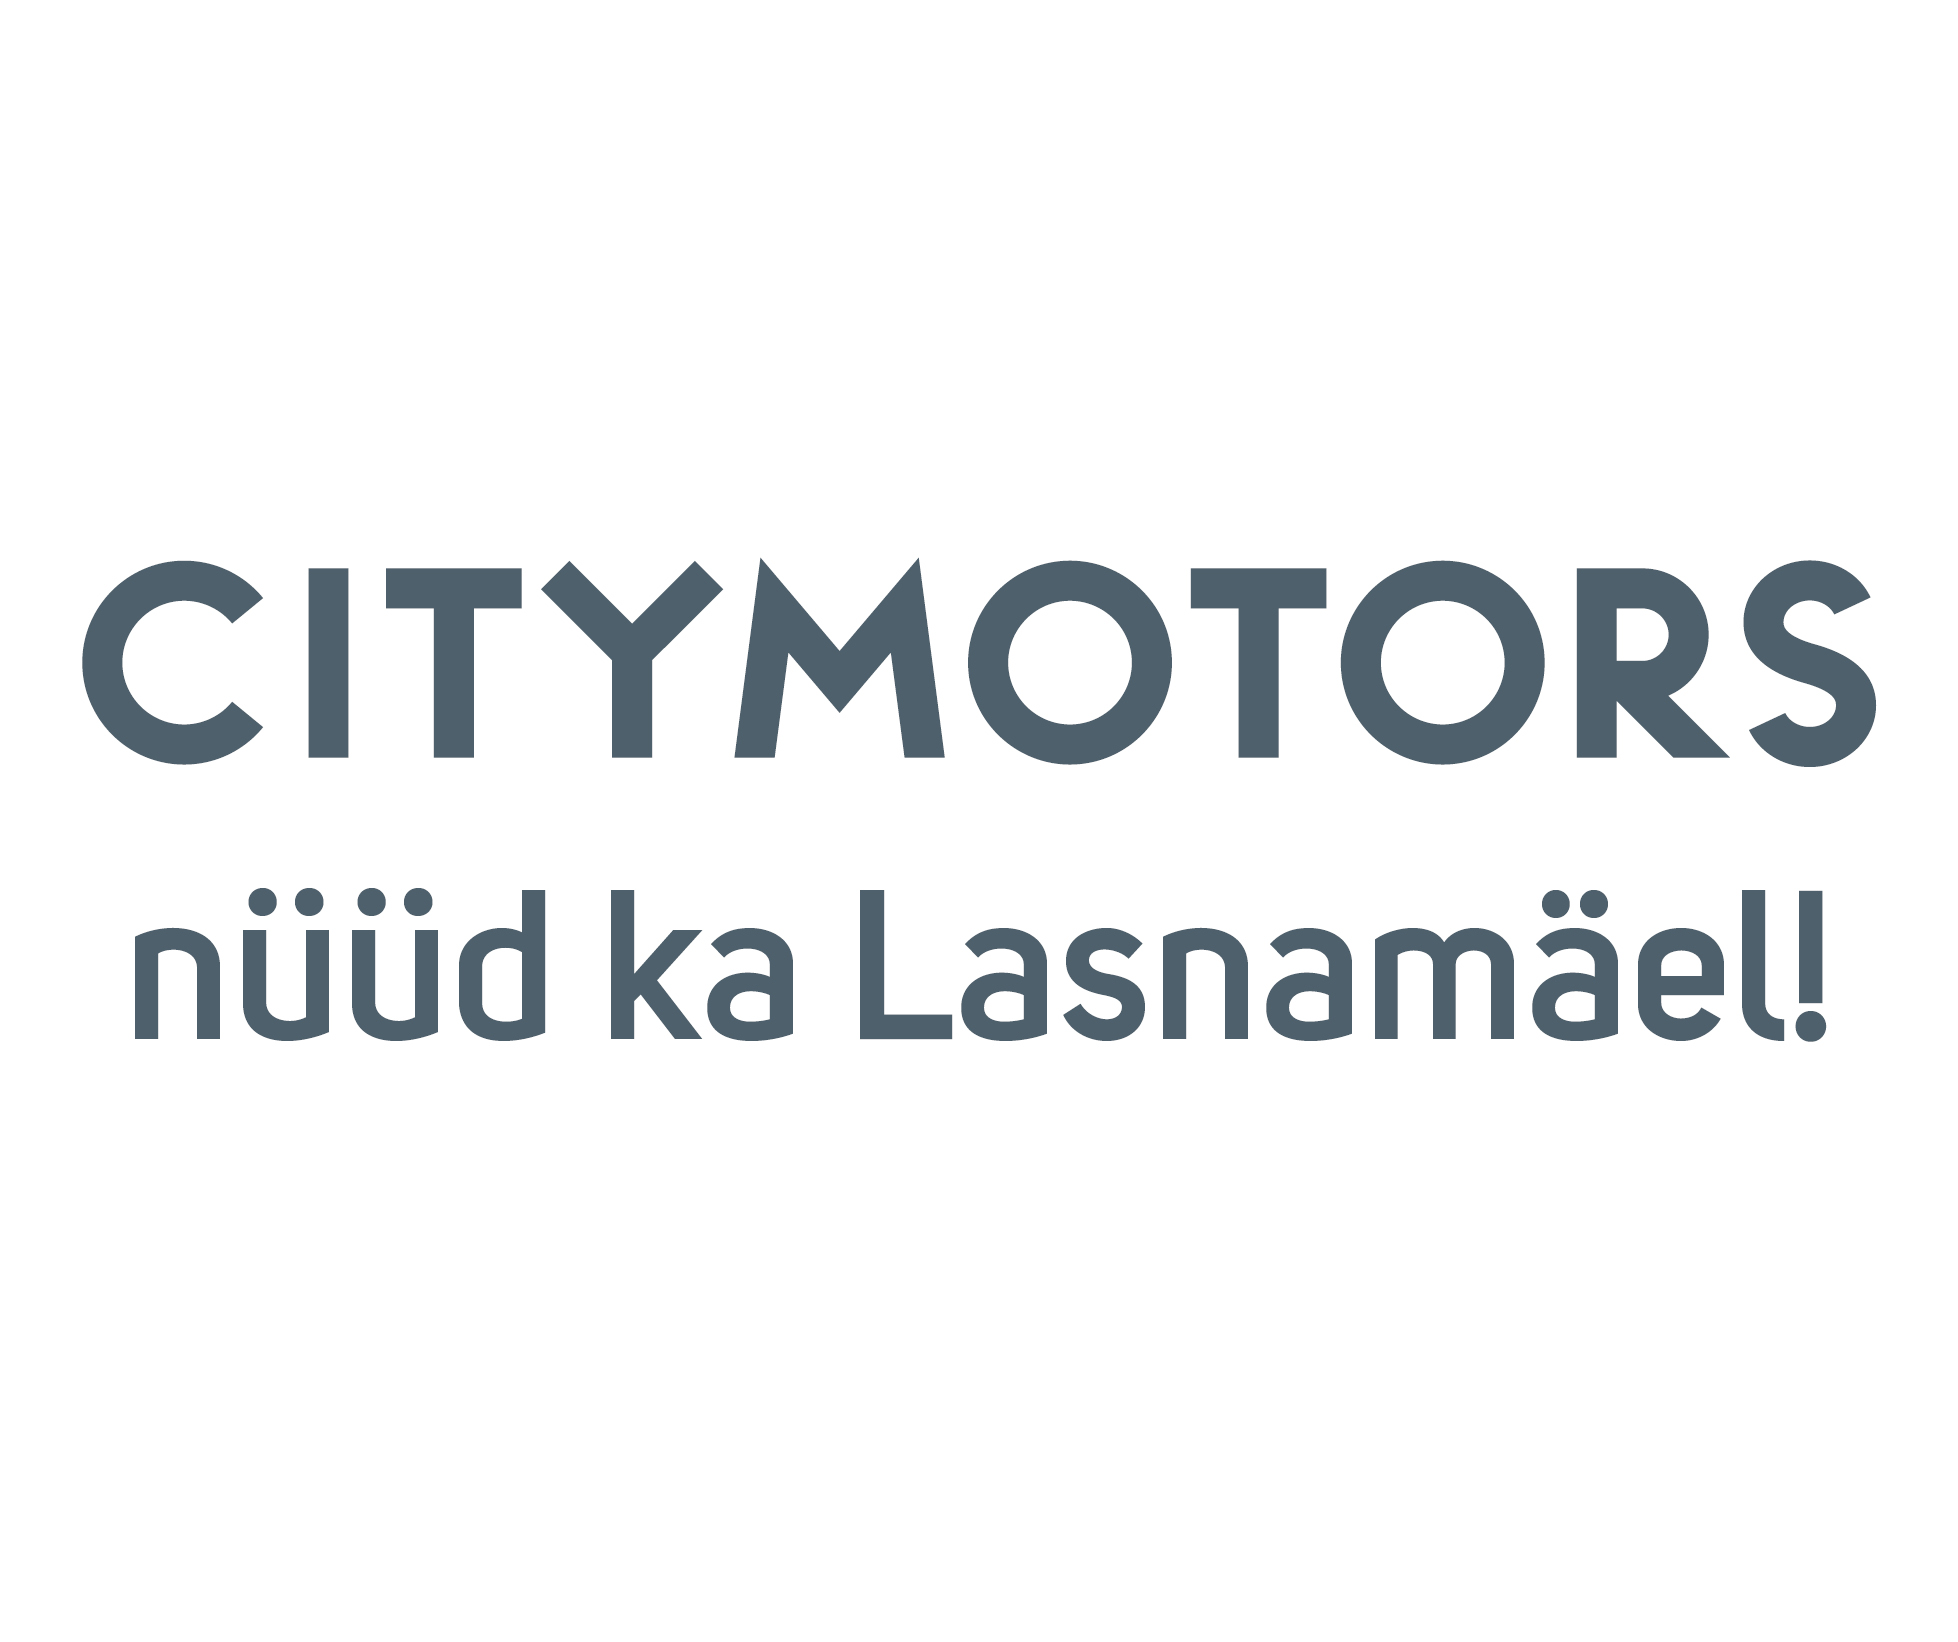 City Motors nüüd ka Lasnamäel!